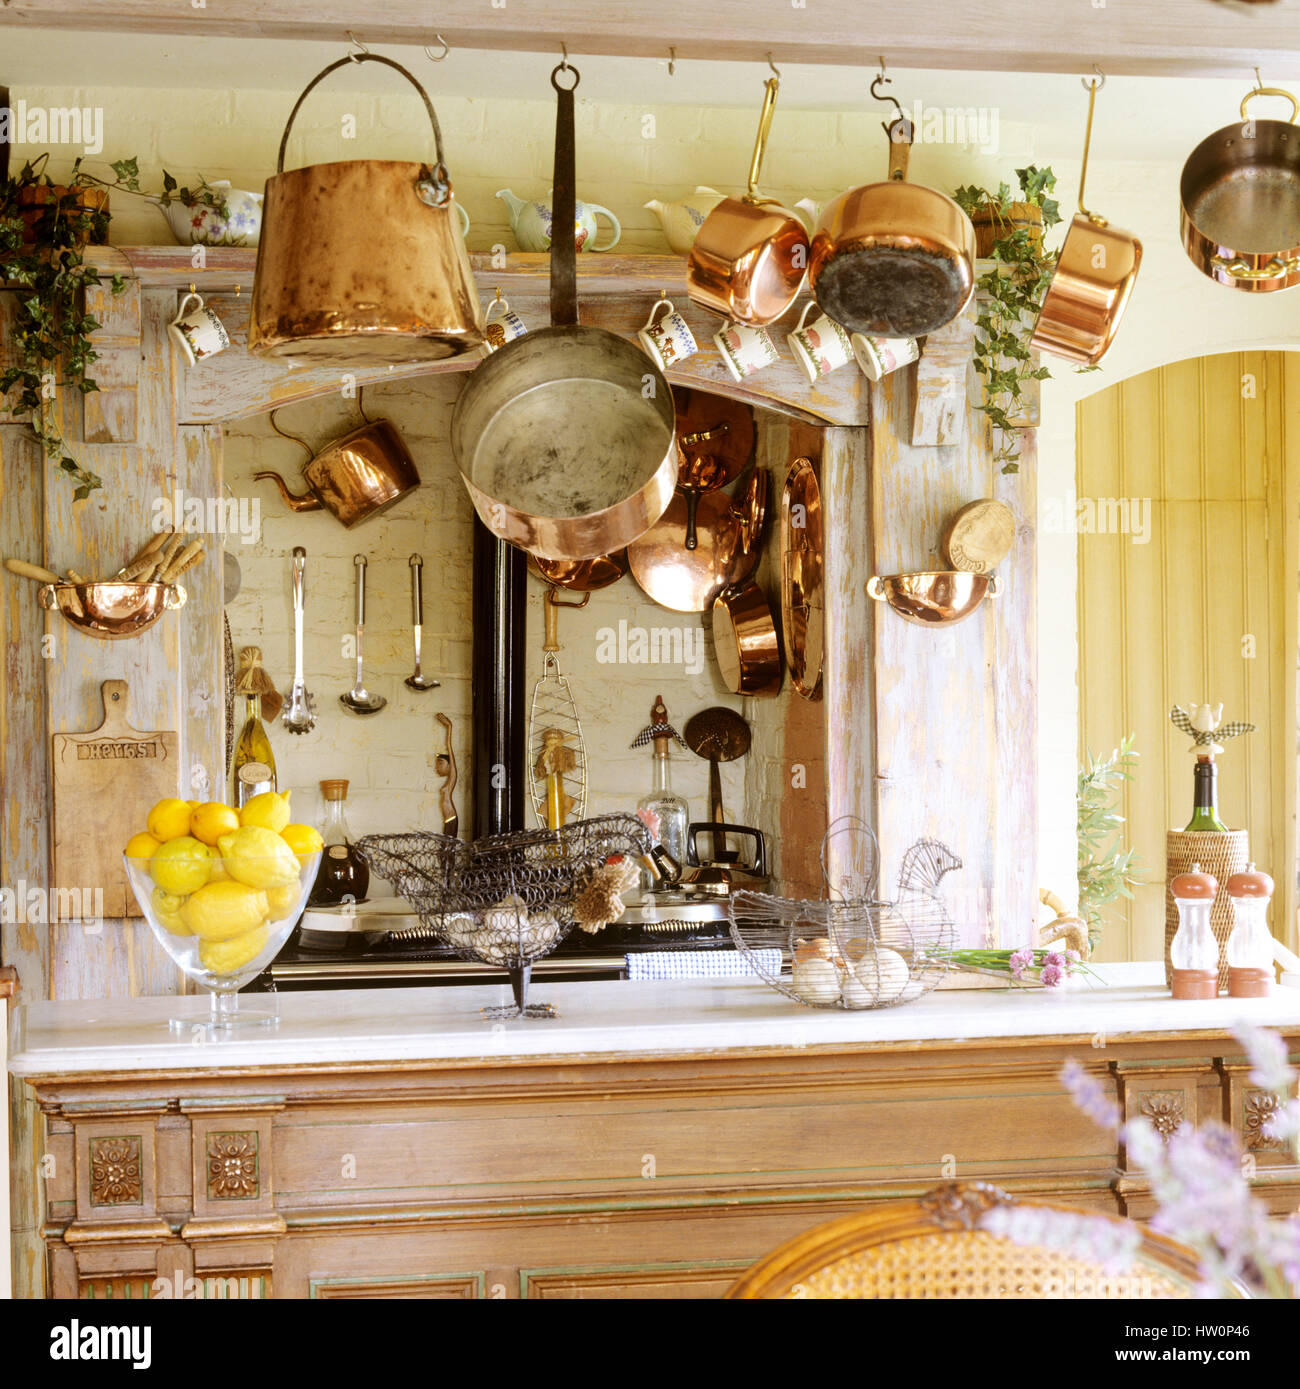 Holzbank in der Küche im rustikalen Stil. Stockfoto